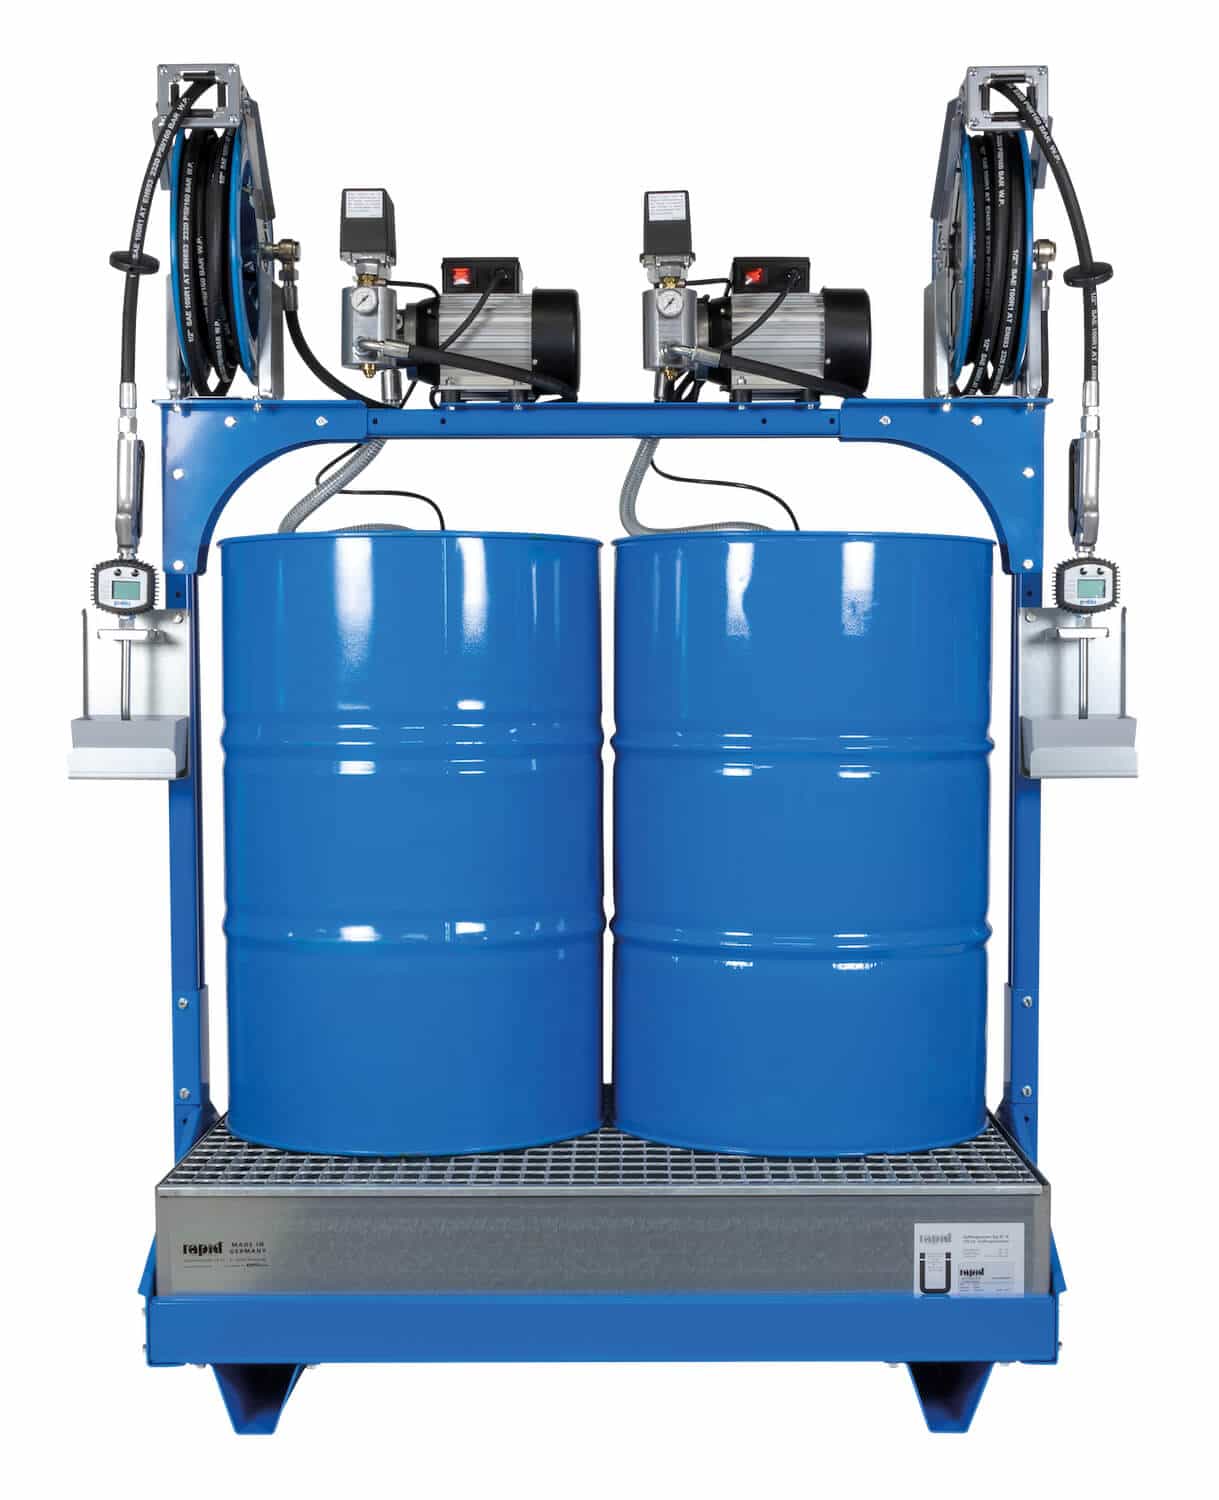 Universell einsetzbares Ölabgabeset für 2x 200 Ltr.-Fässer, mit elektrischen Pumpen und automatischen Schlauchaufrollern, eichfähig / MID-konform